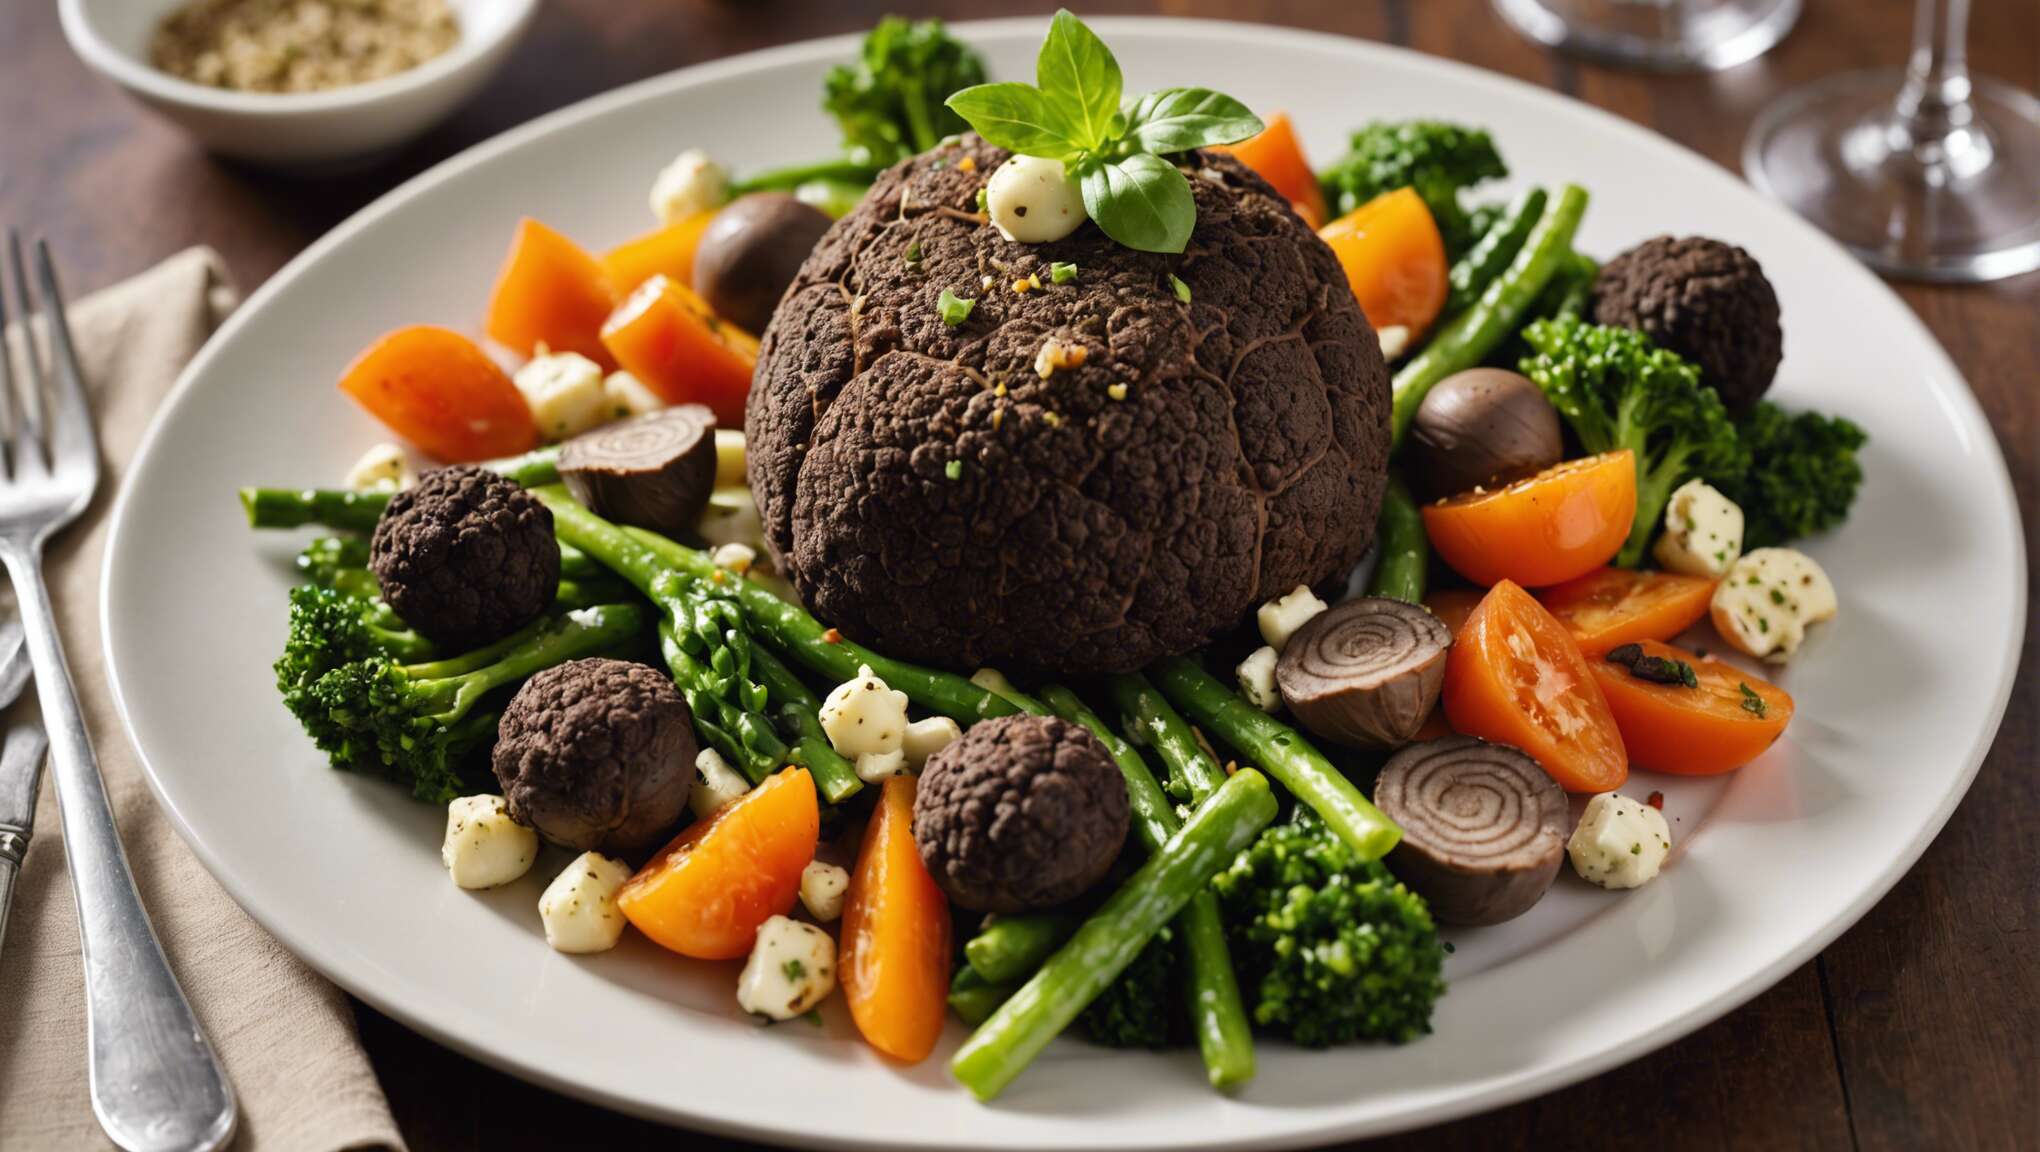 Cuisine gourmet : intégrer les truffes dans une alimentation équilibrée